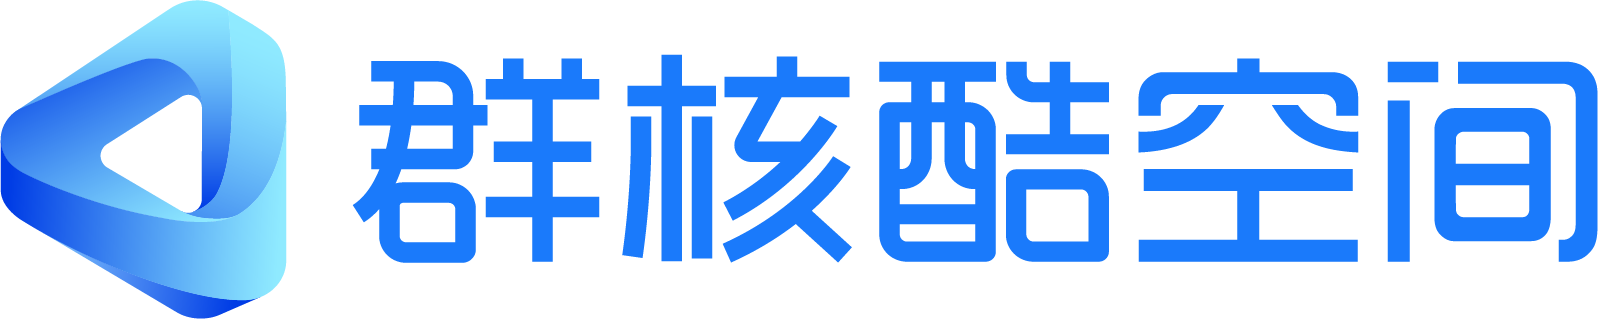 群核酷空间logo